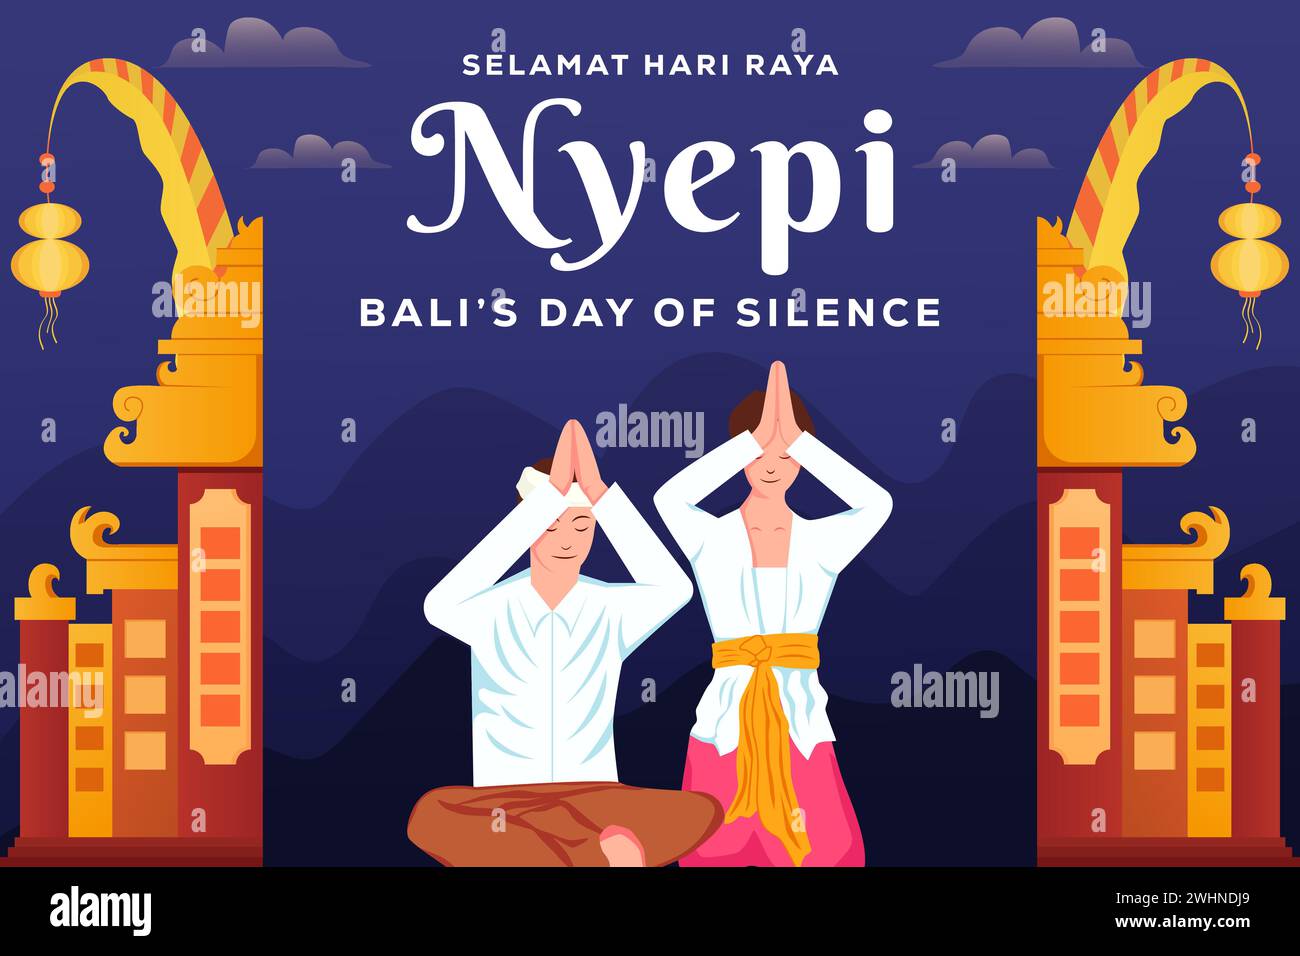 Illustration de fond du jour de silence de Nyepi Bali avec deux personnes priant Illustration de Vecteur